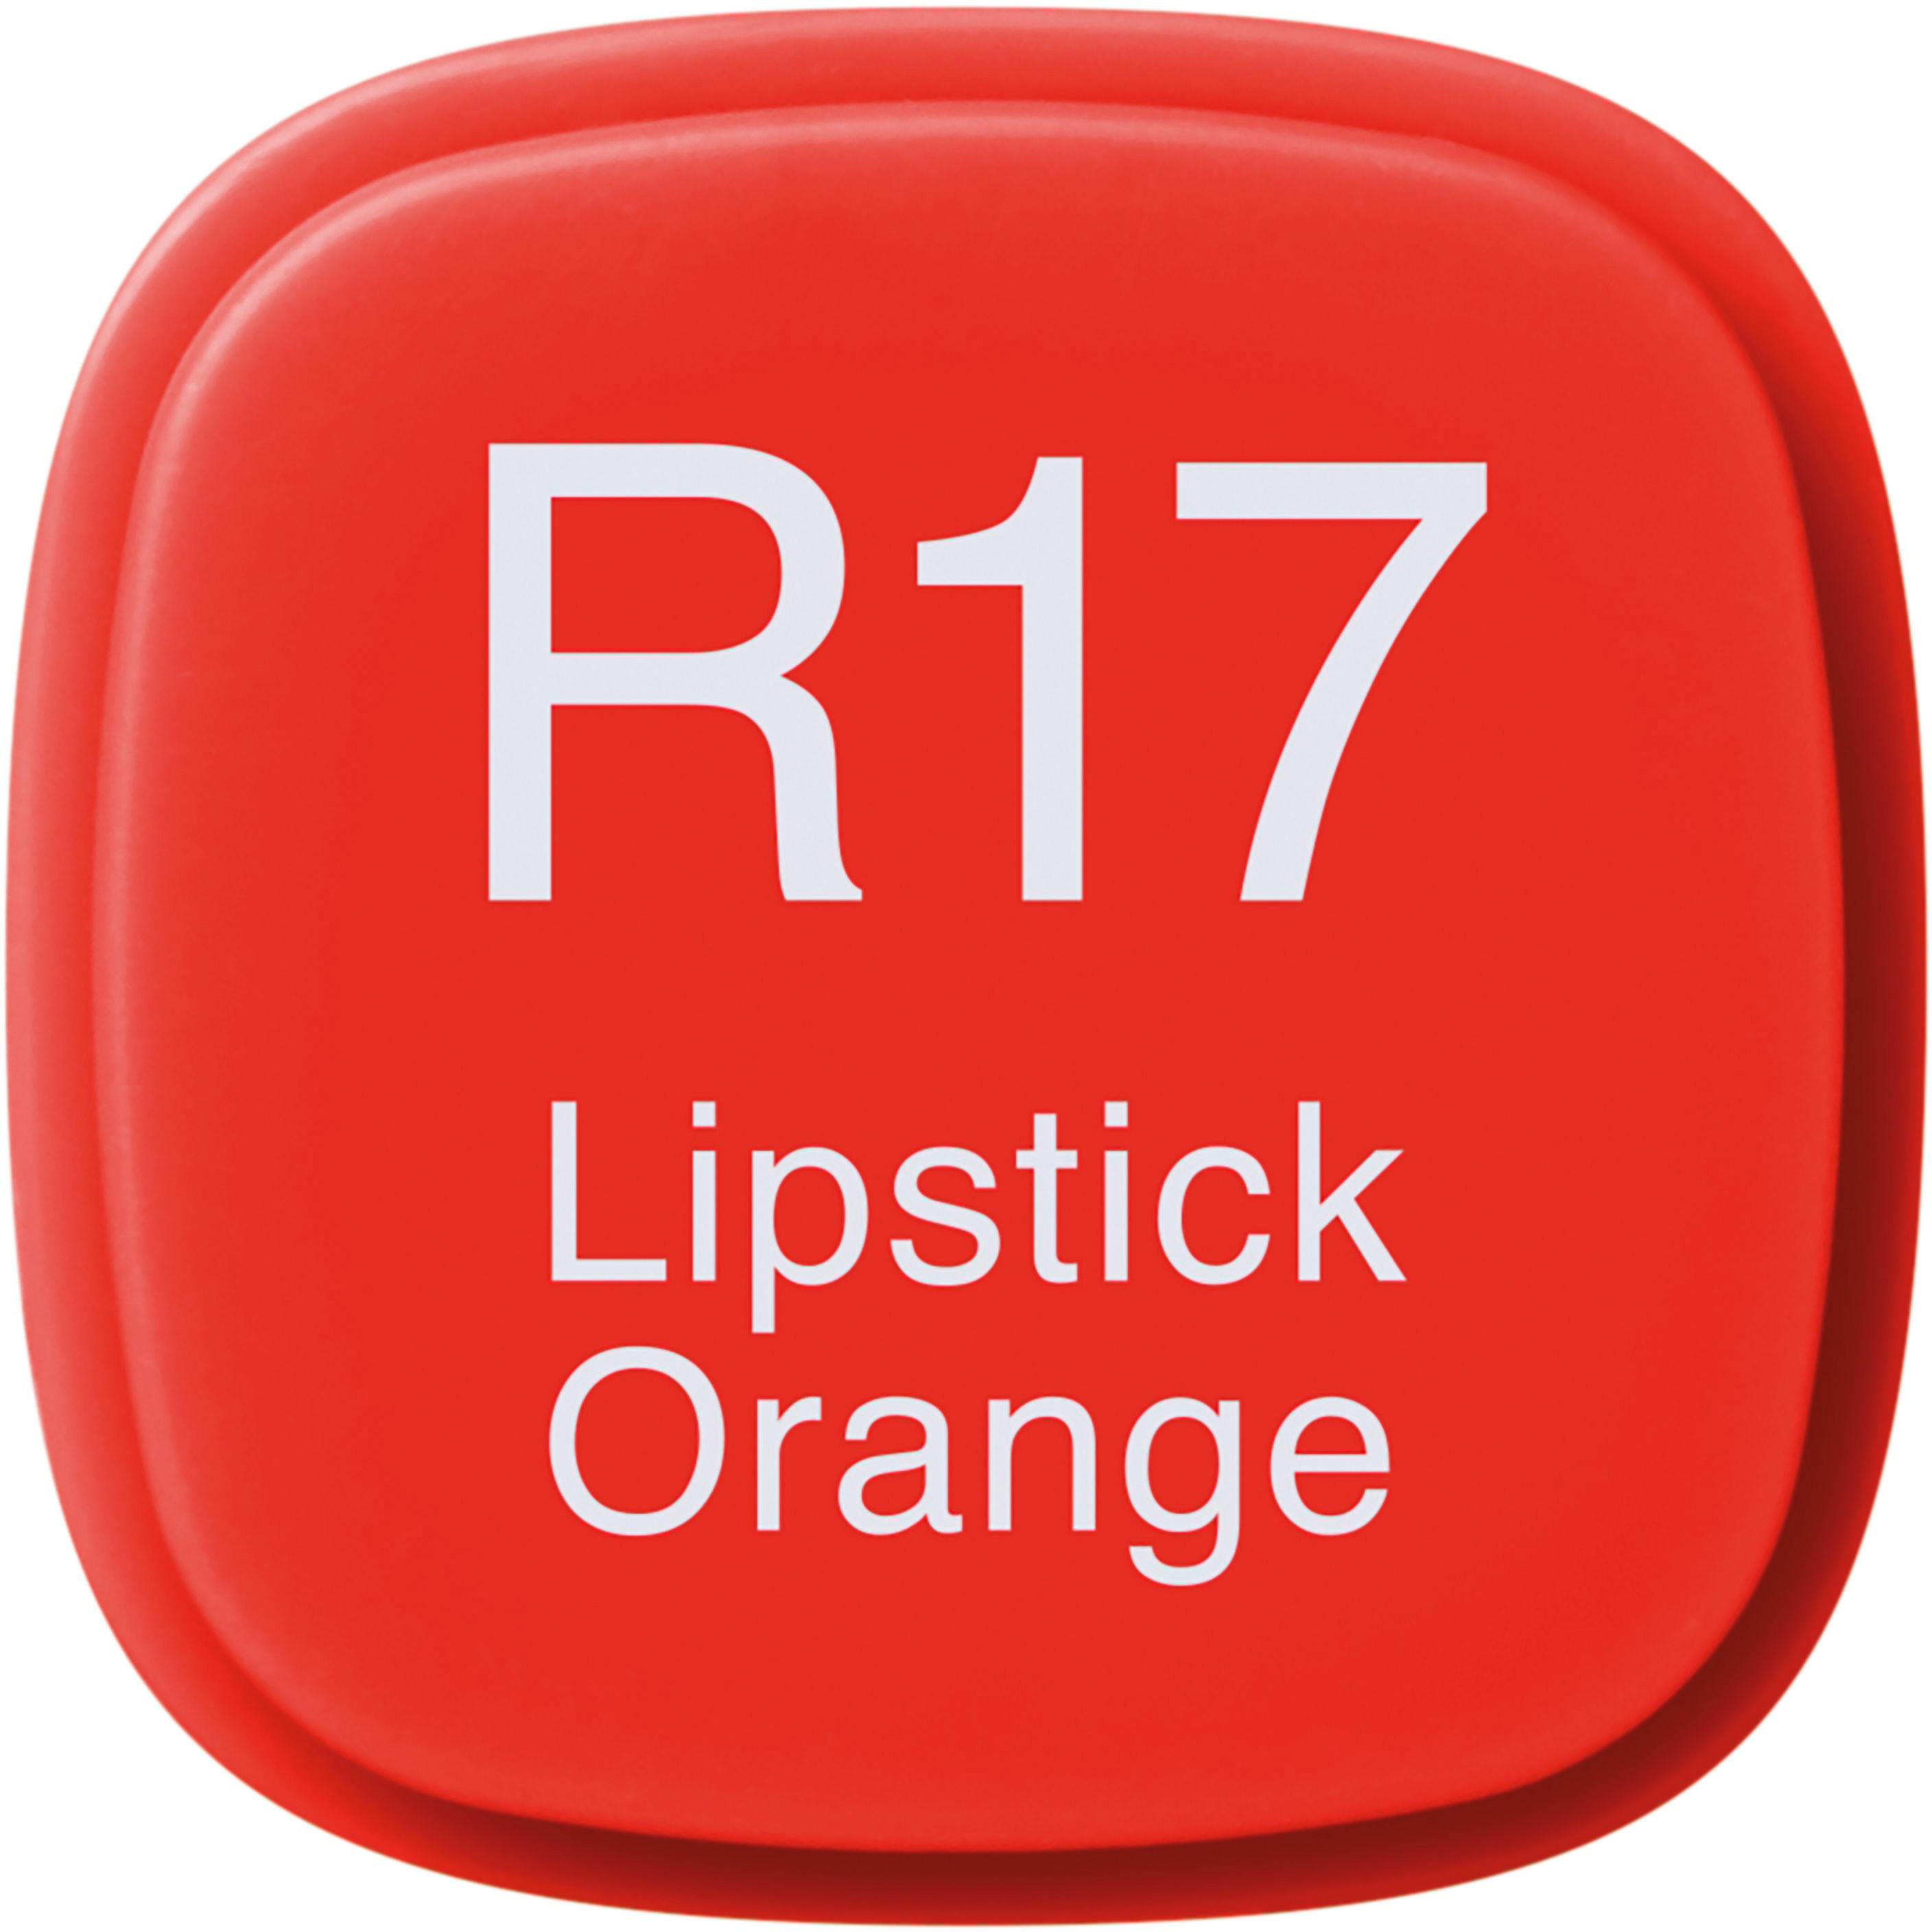 COPIC Marker Classic 20075126 R17 - Lipstick Orange